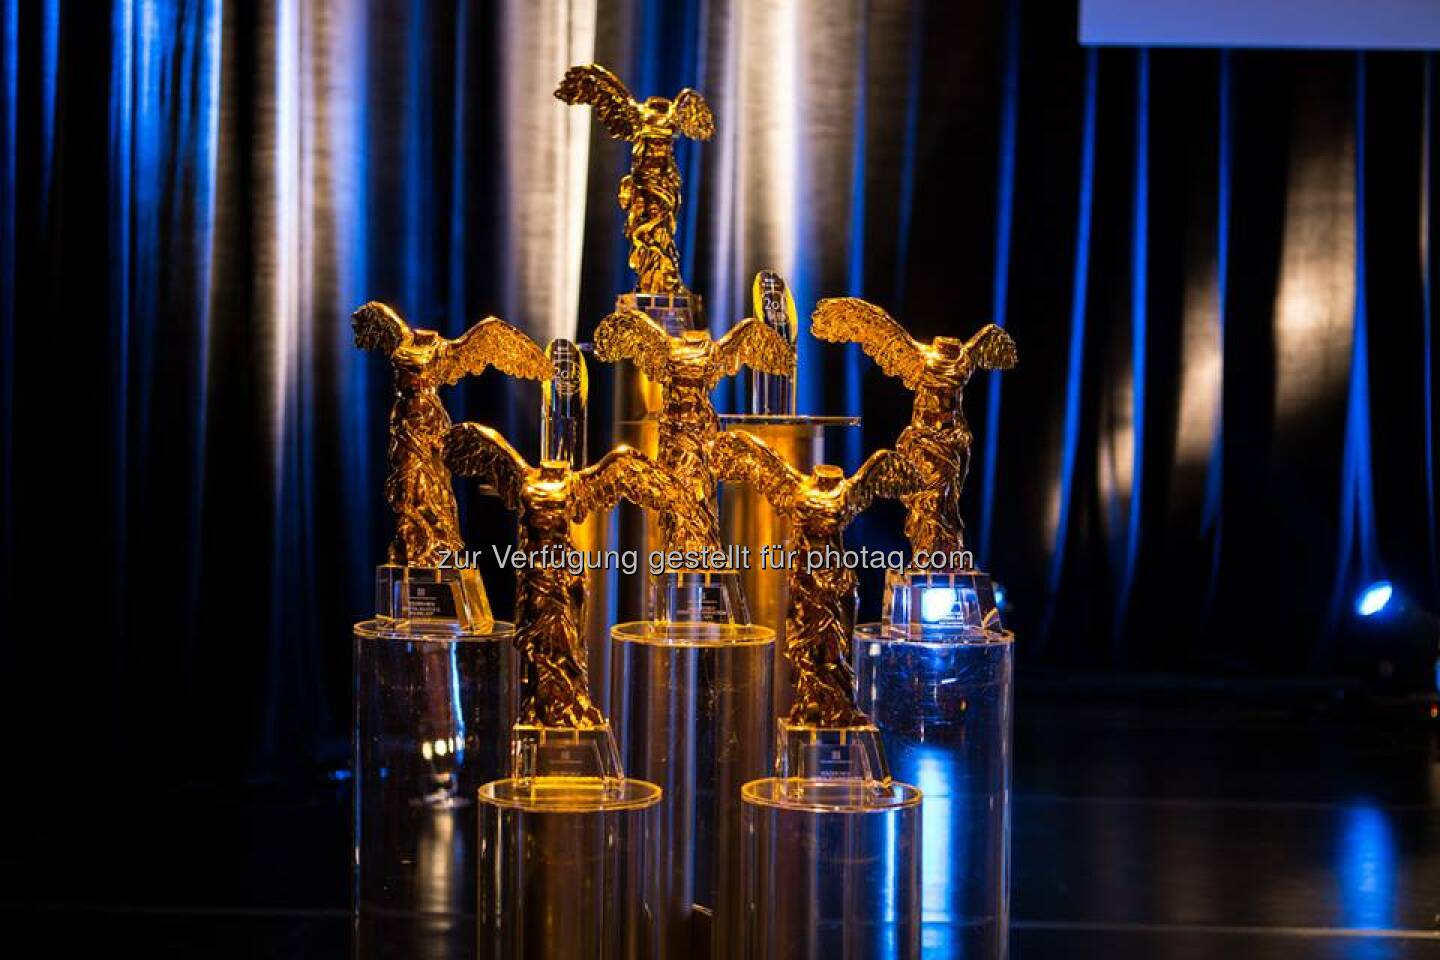 Die Gewinner des Prix Ars Electronica 2014 stehen fest! In der Kategorie [the next idea] voestalpine Art and Technology Grant gewinnt das Projekt BlindMaps von Markus Schmeiduch (AT), Andrew Spitz (FR) und Ruben van der Vleuten (NL). http://bit.ly/T6Dmqv  Source: http://facebook.com/voestalpine